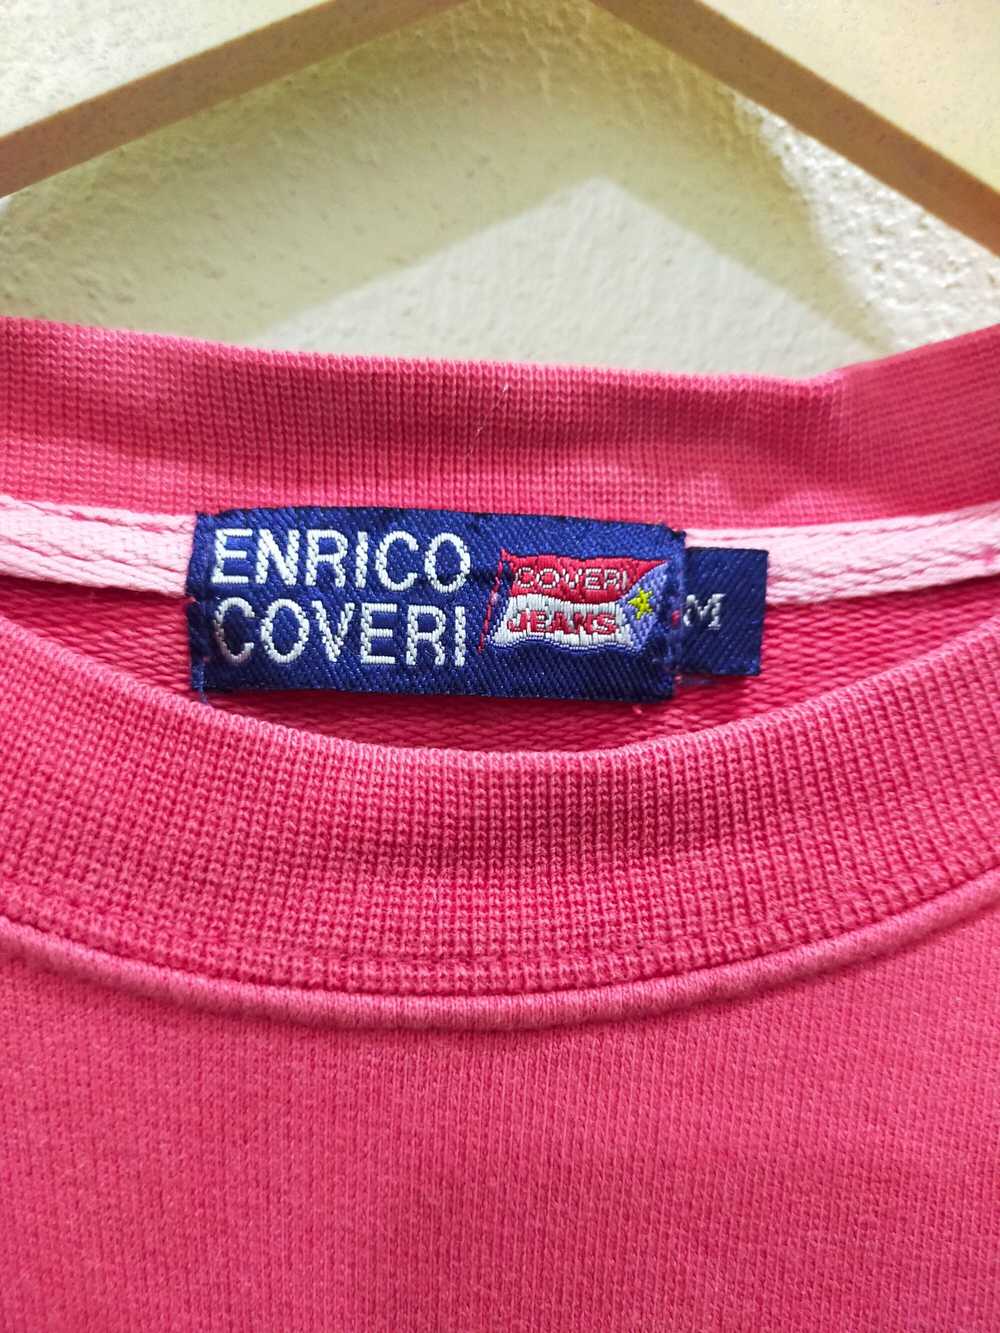 Designer × Enrico Coveri Enrico Coveri Embroidere… - image 6